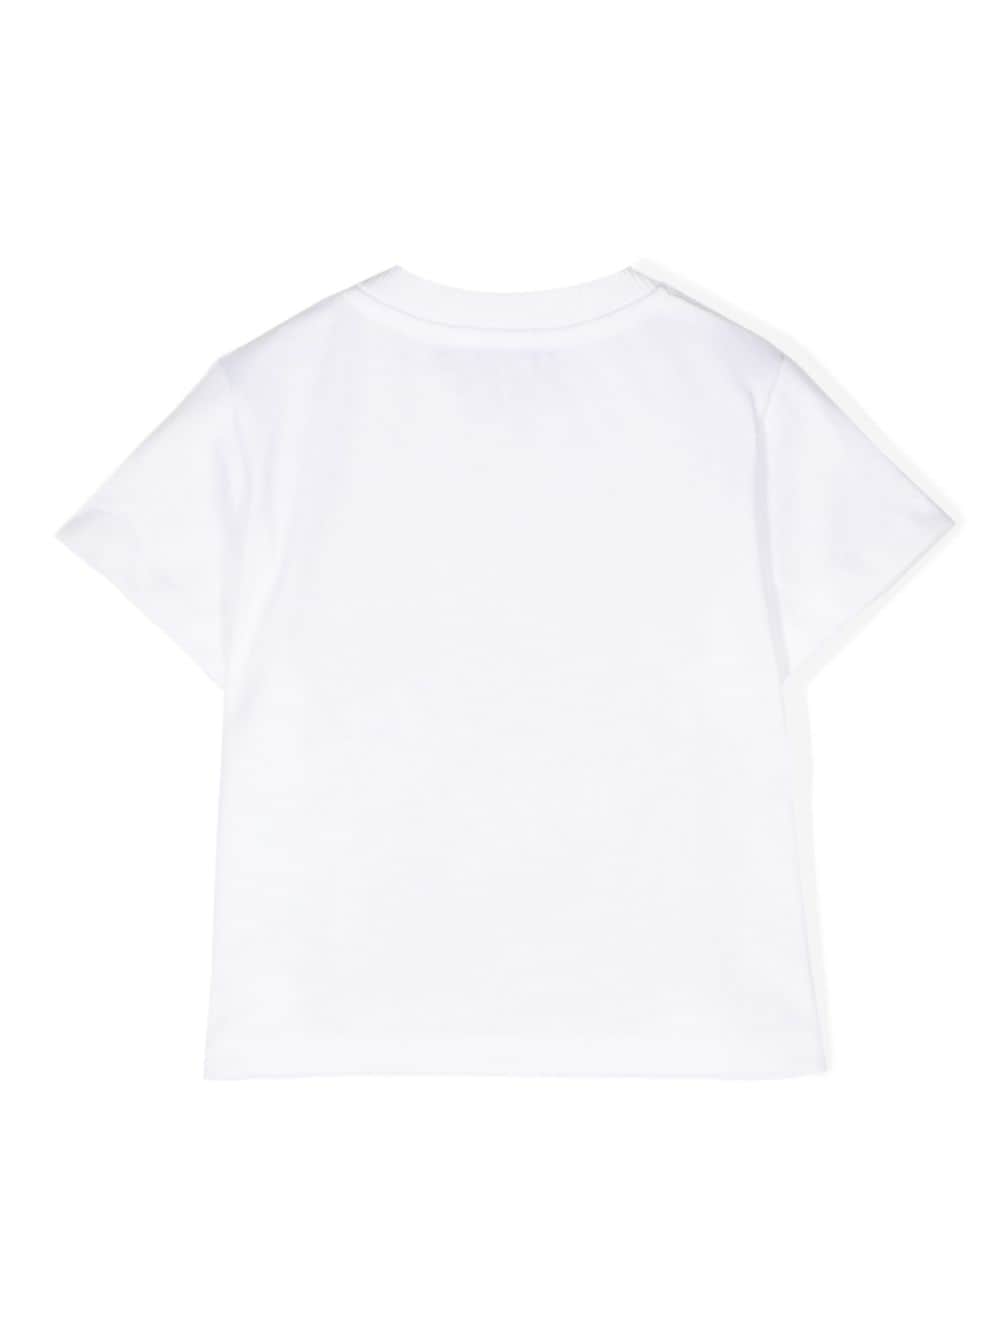 t-shirt bianca neonato